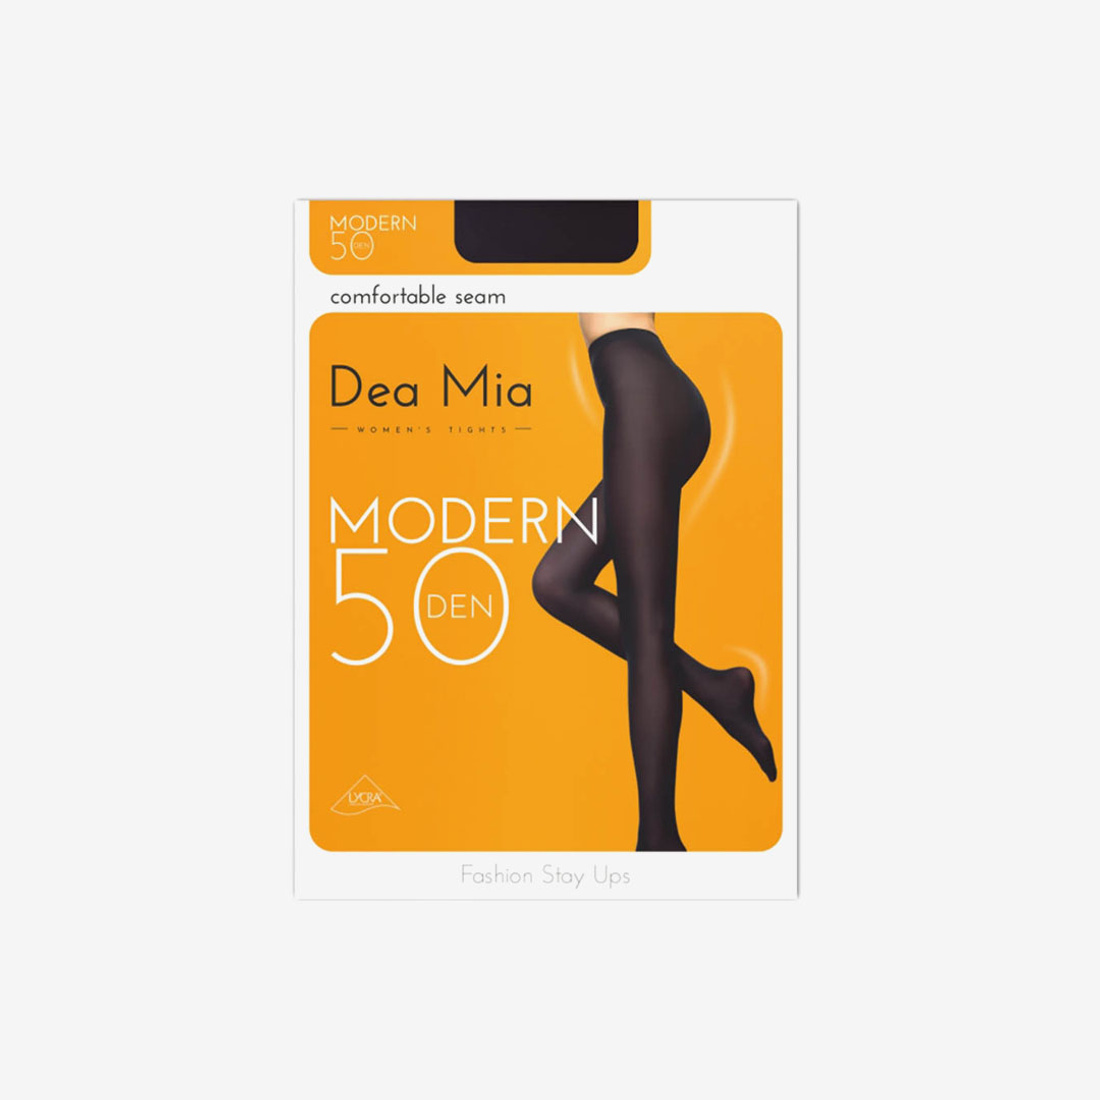 Колготки Dea Mia Modern женские чёрные 50 Den р-р 5 | Чулки и носки |  Arbuz.kz